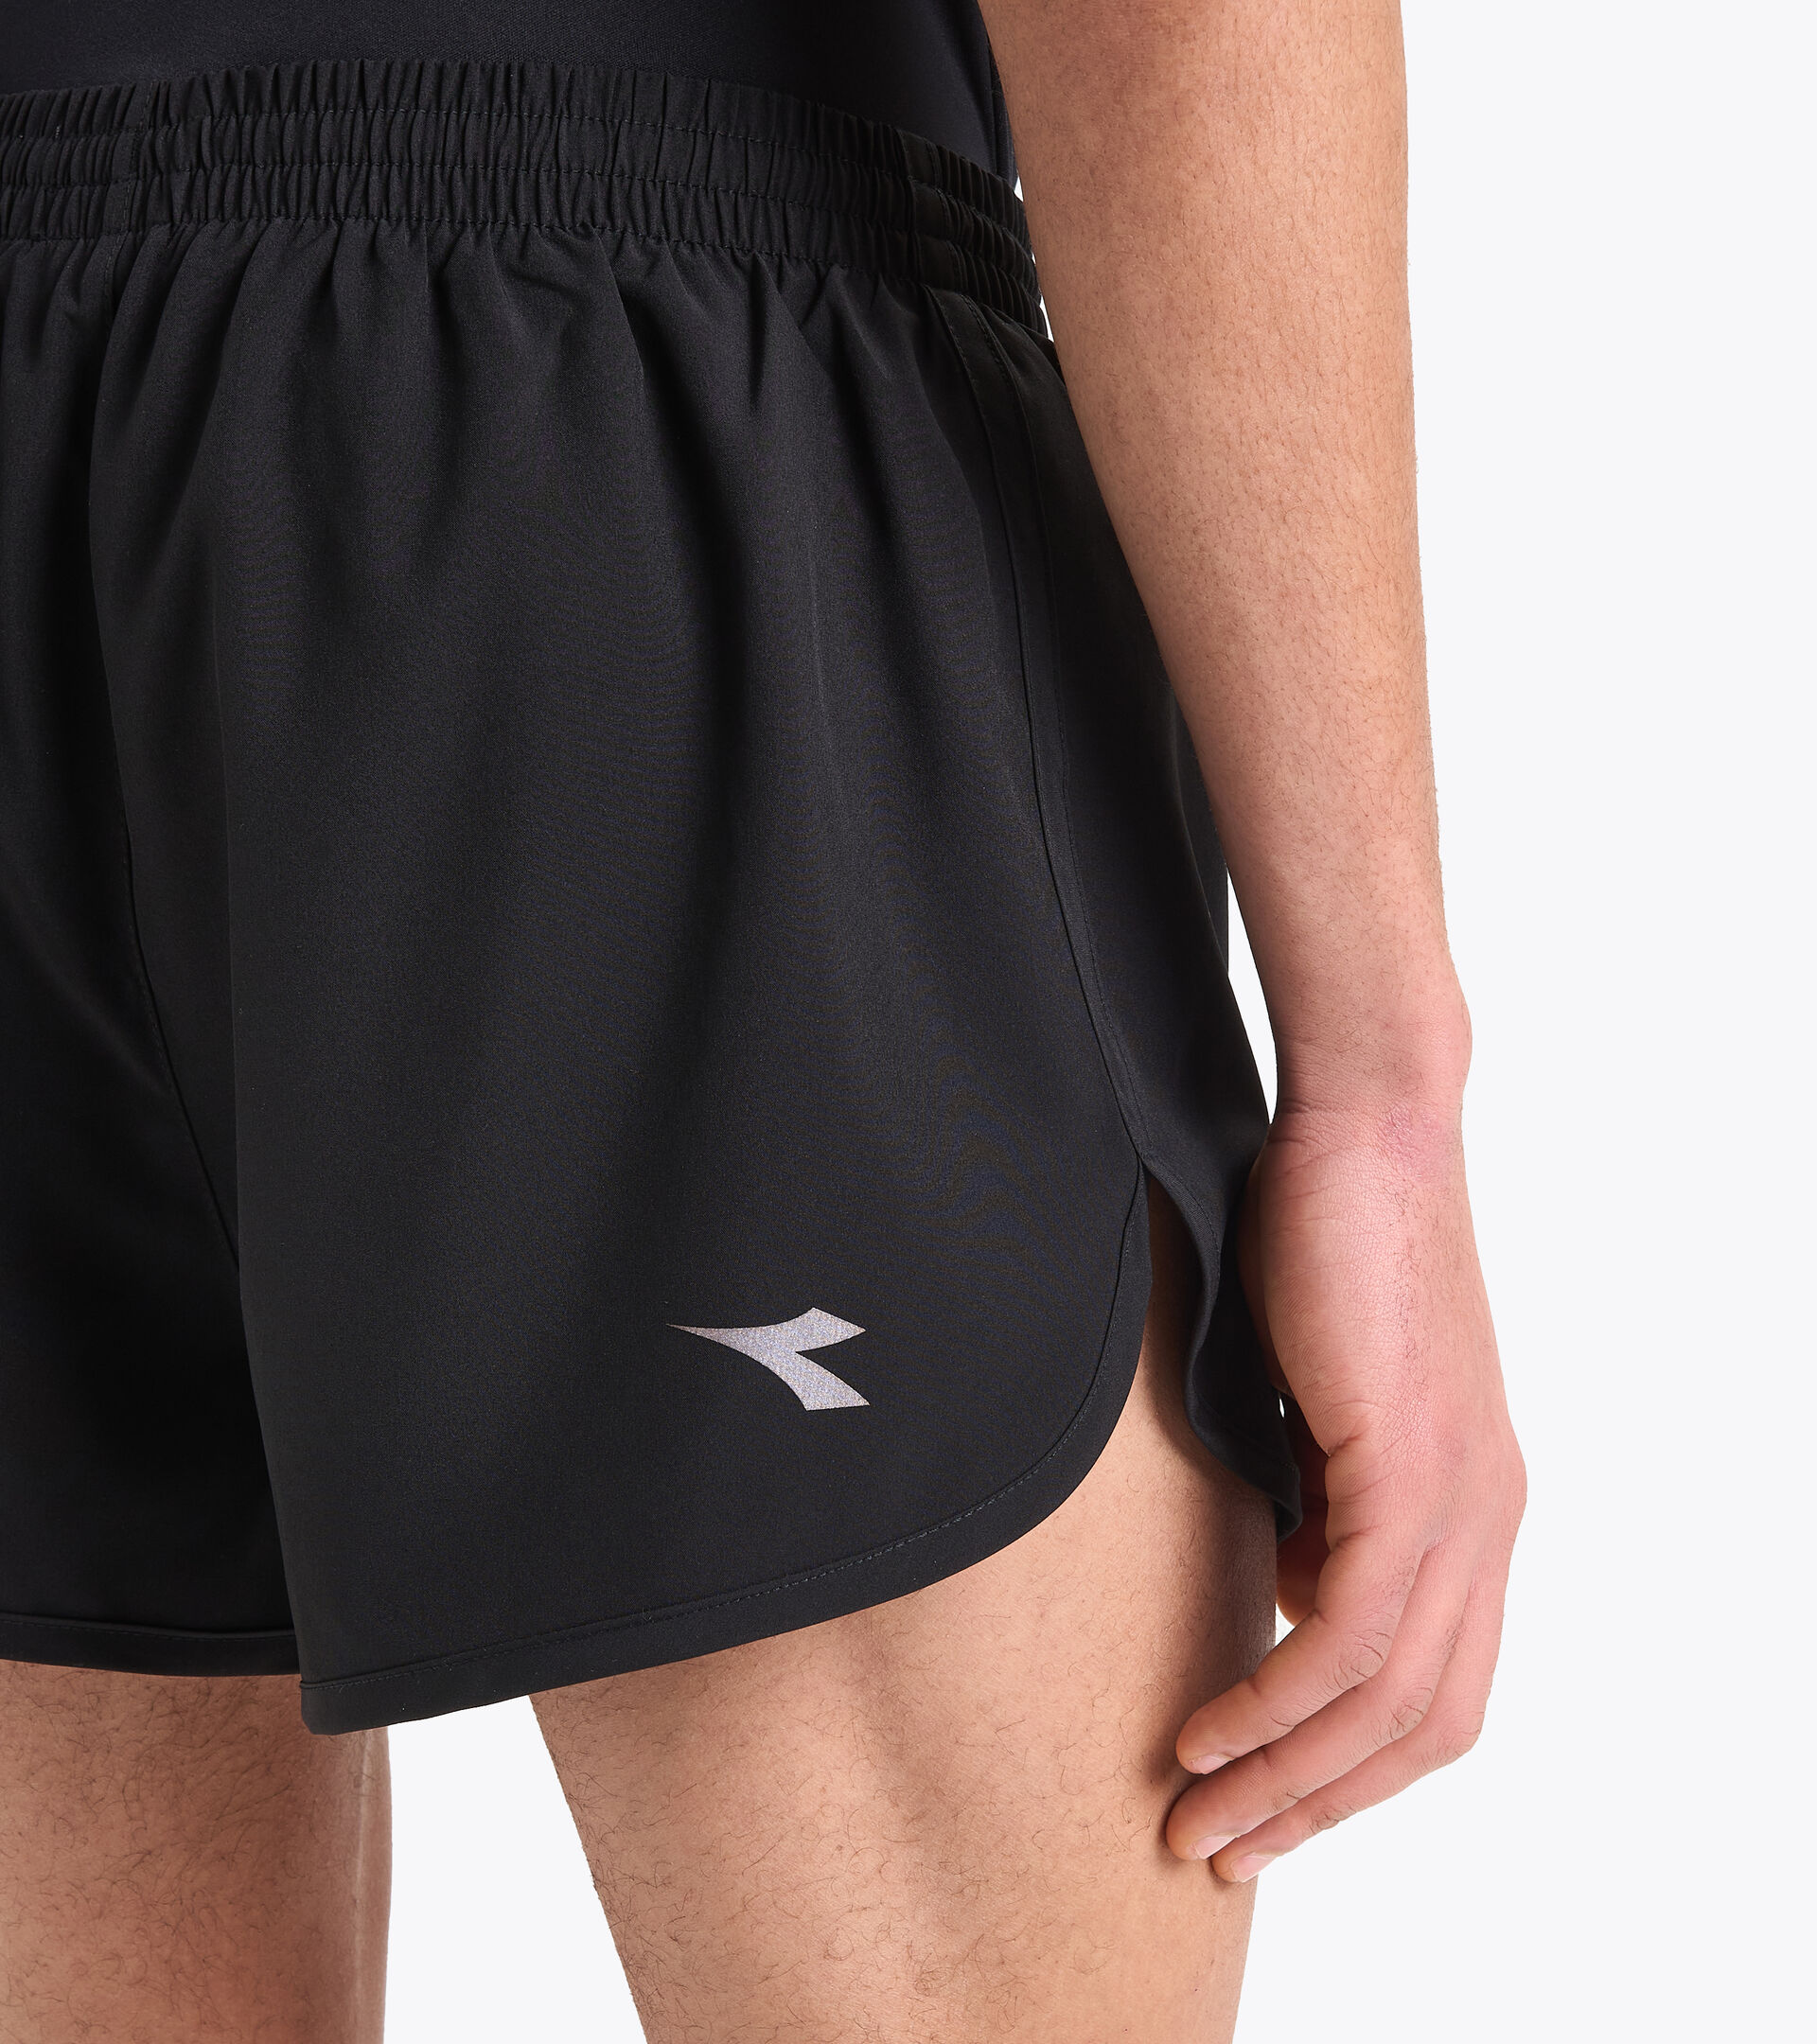 SHORT RUN Running shorts - Men - Diadora Online Store DK